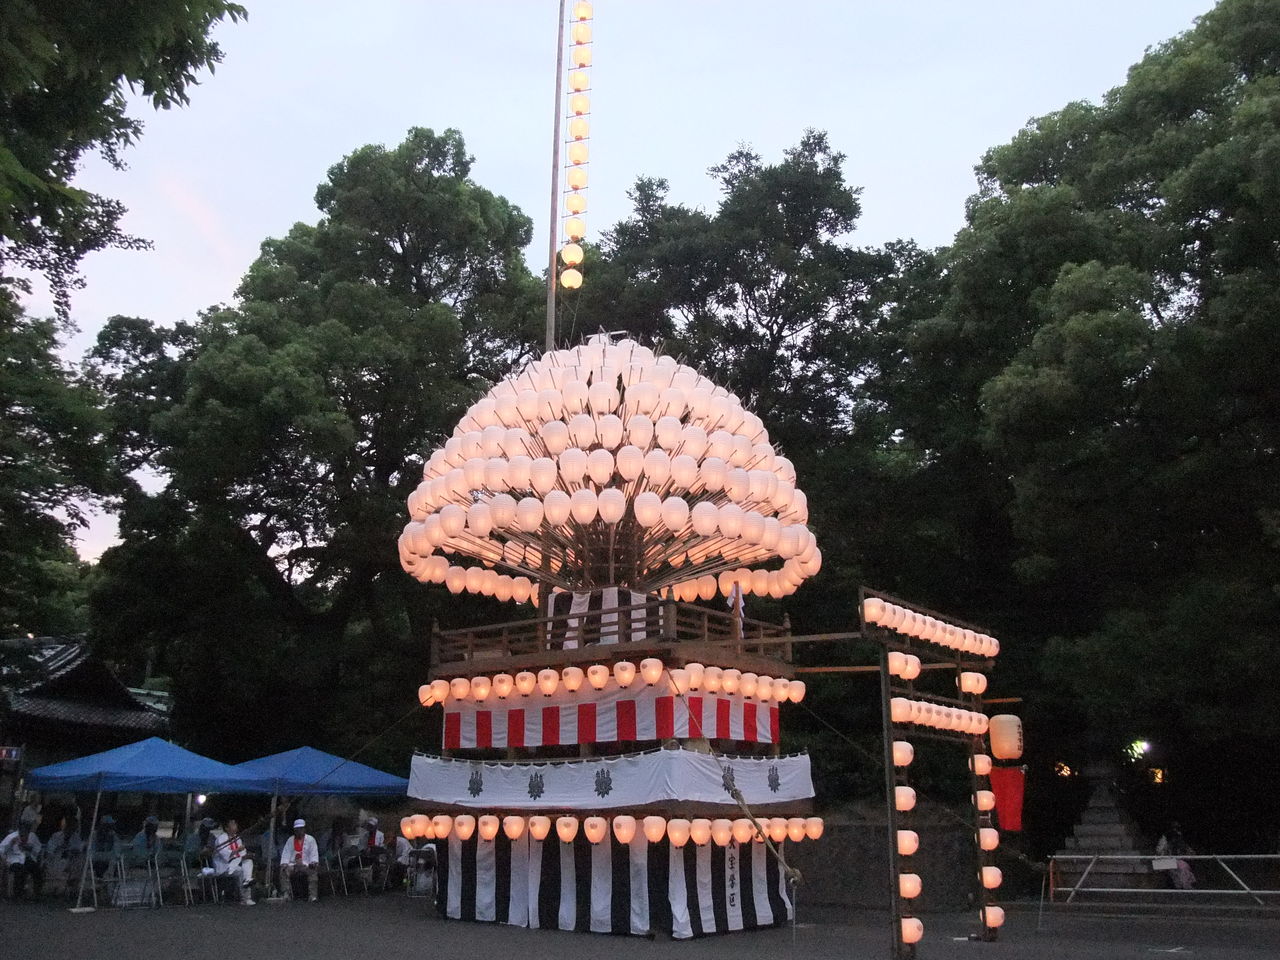 熱田神宮の例祭 熱田まつり やつば池散歩道 豊田市 のブログ